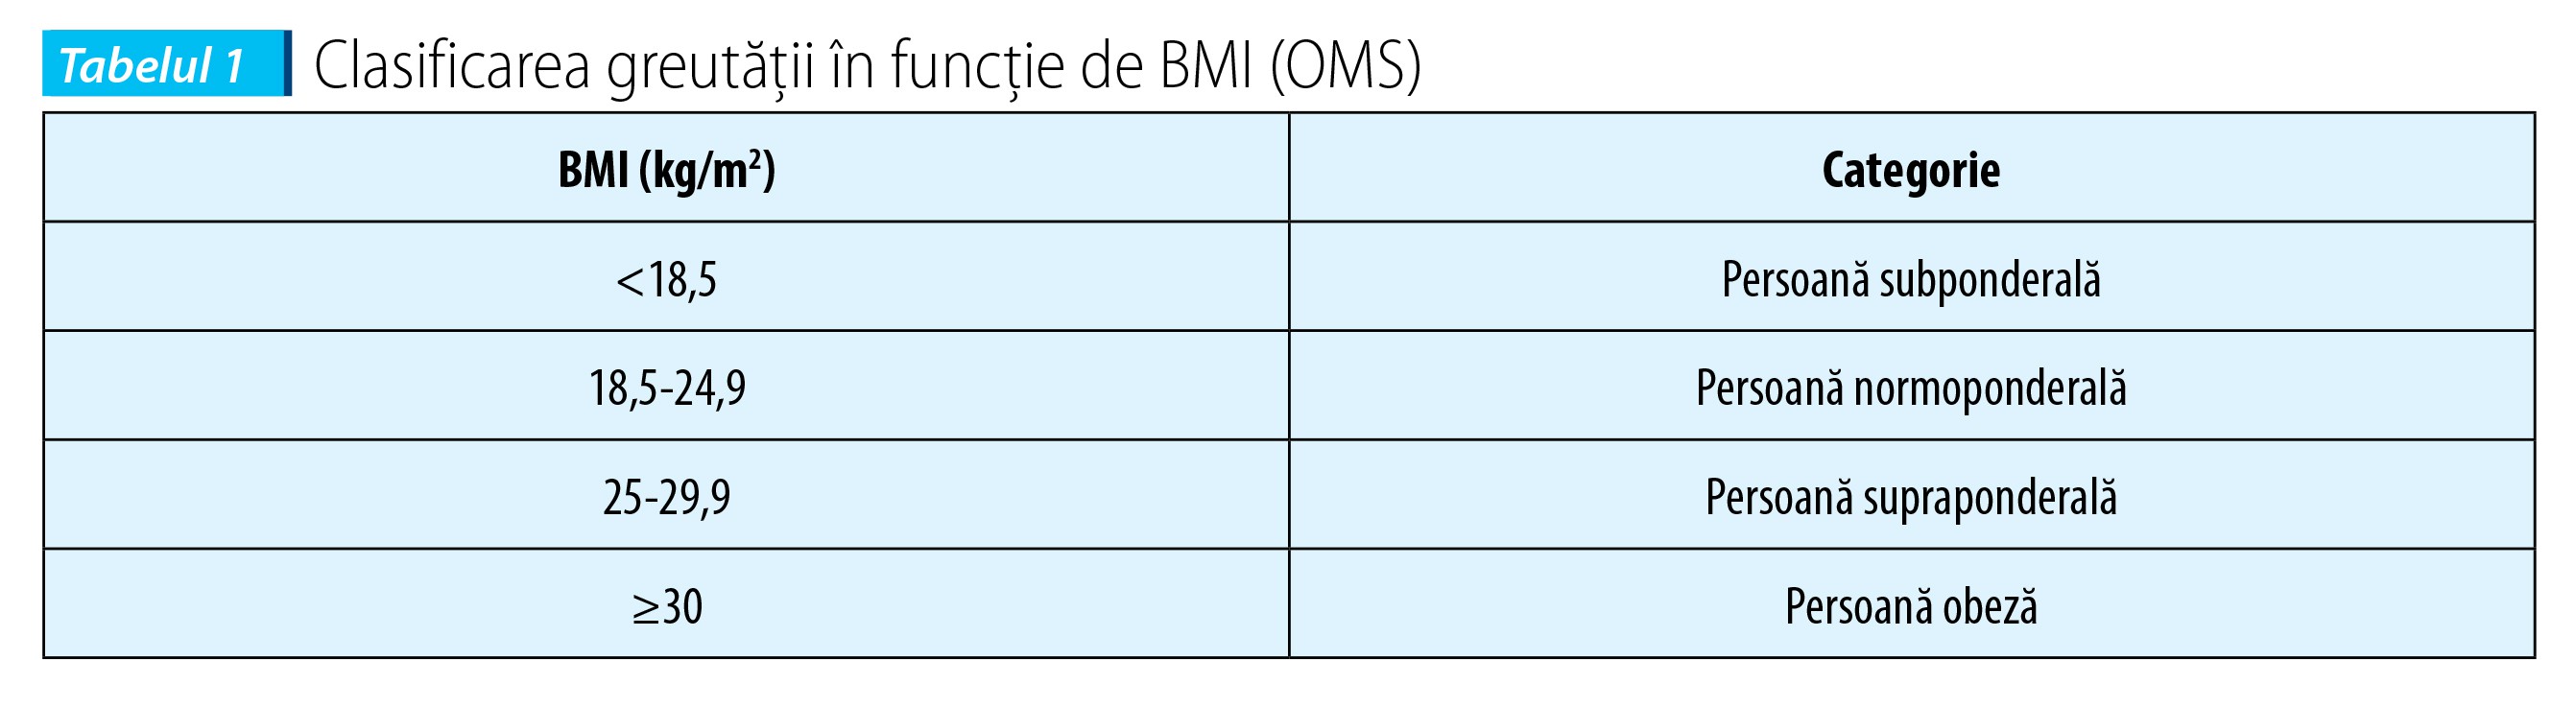 Tabelul 1. Clasificarea greutăţii în funcţie de BMI (OMS)